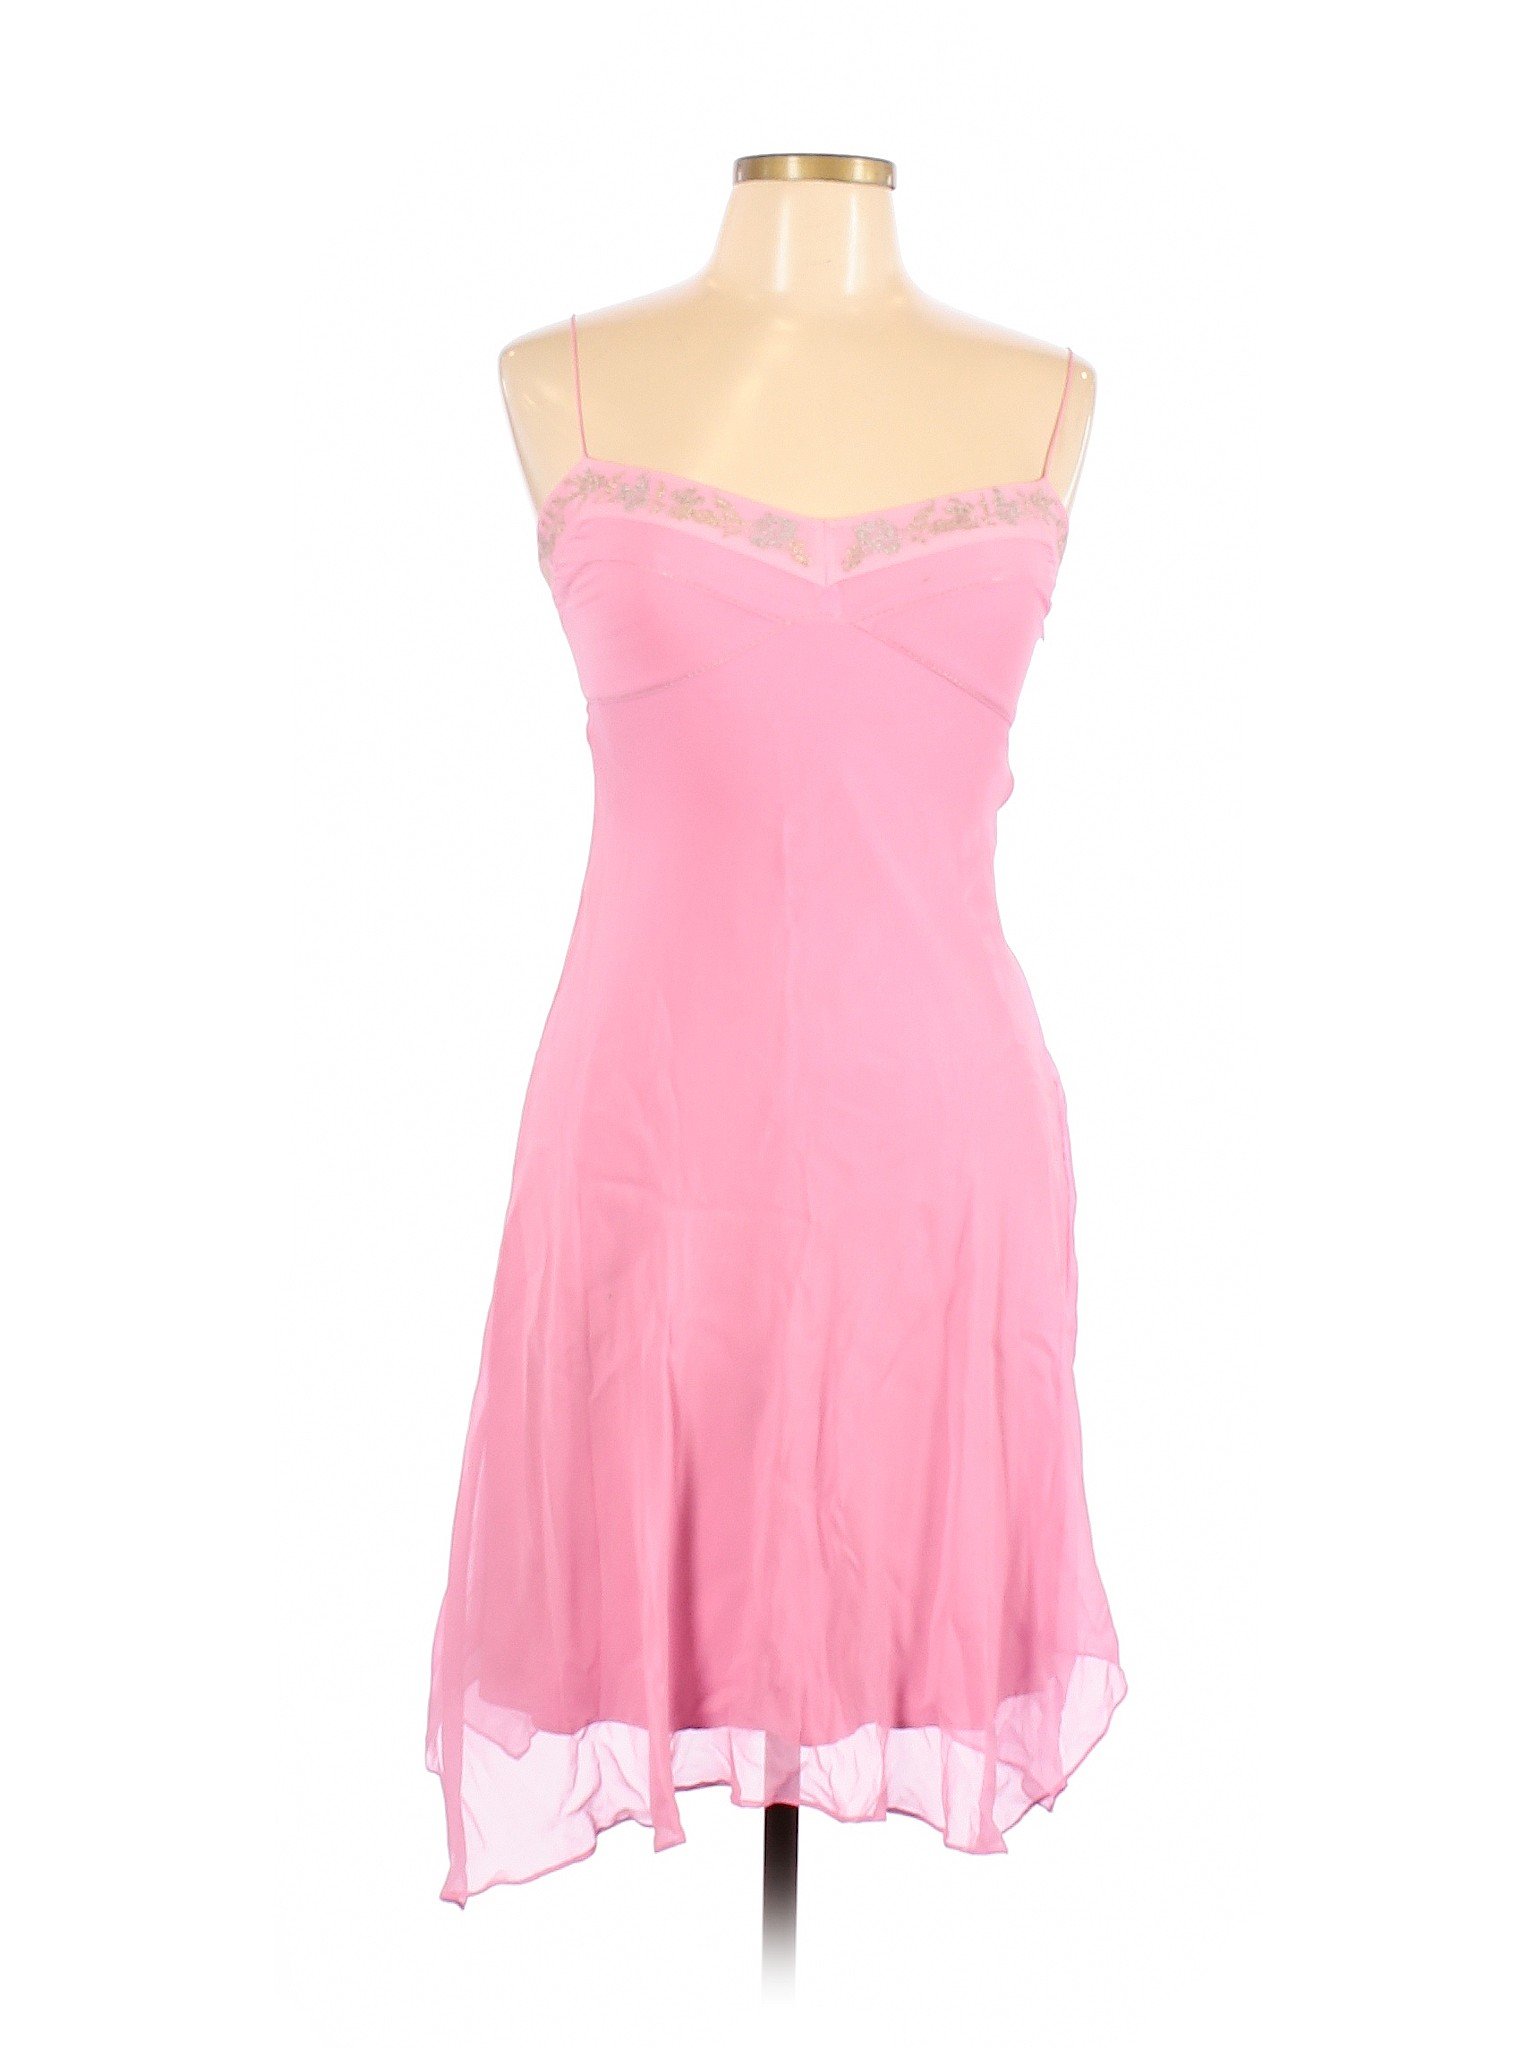 Antonio Melani Women Pink Cocktail Dress 6 | eBay